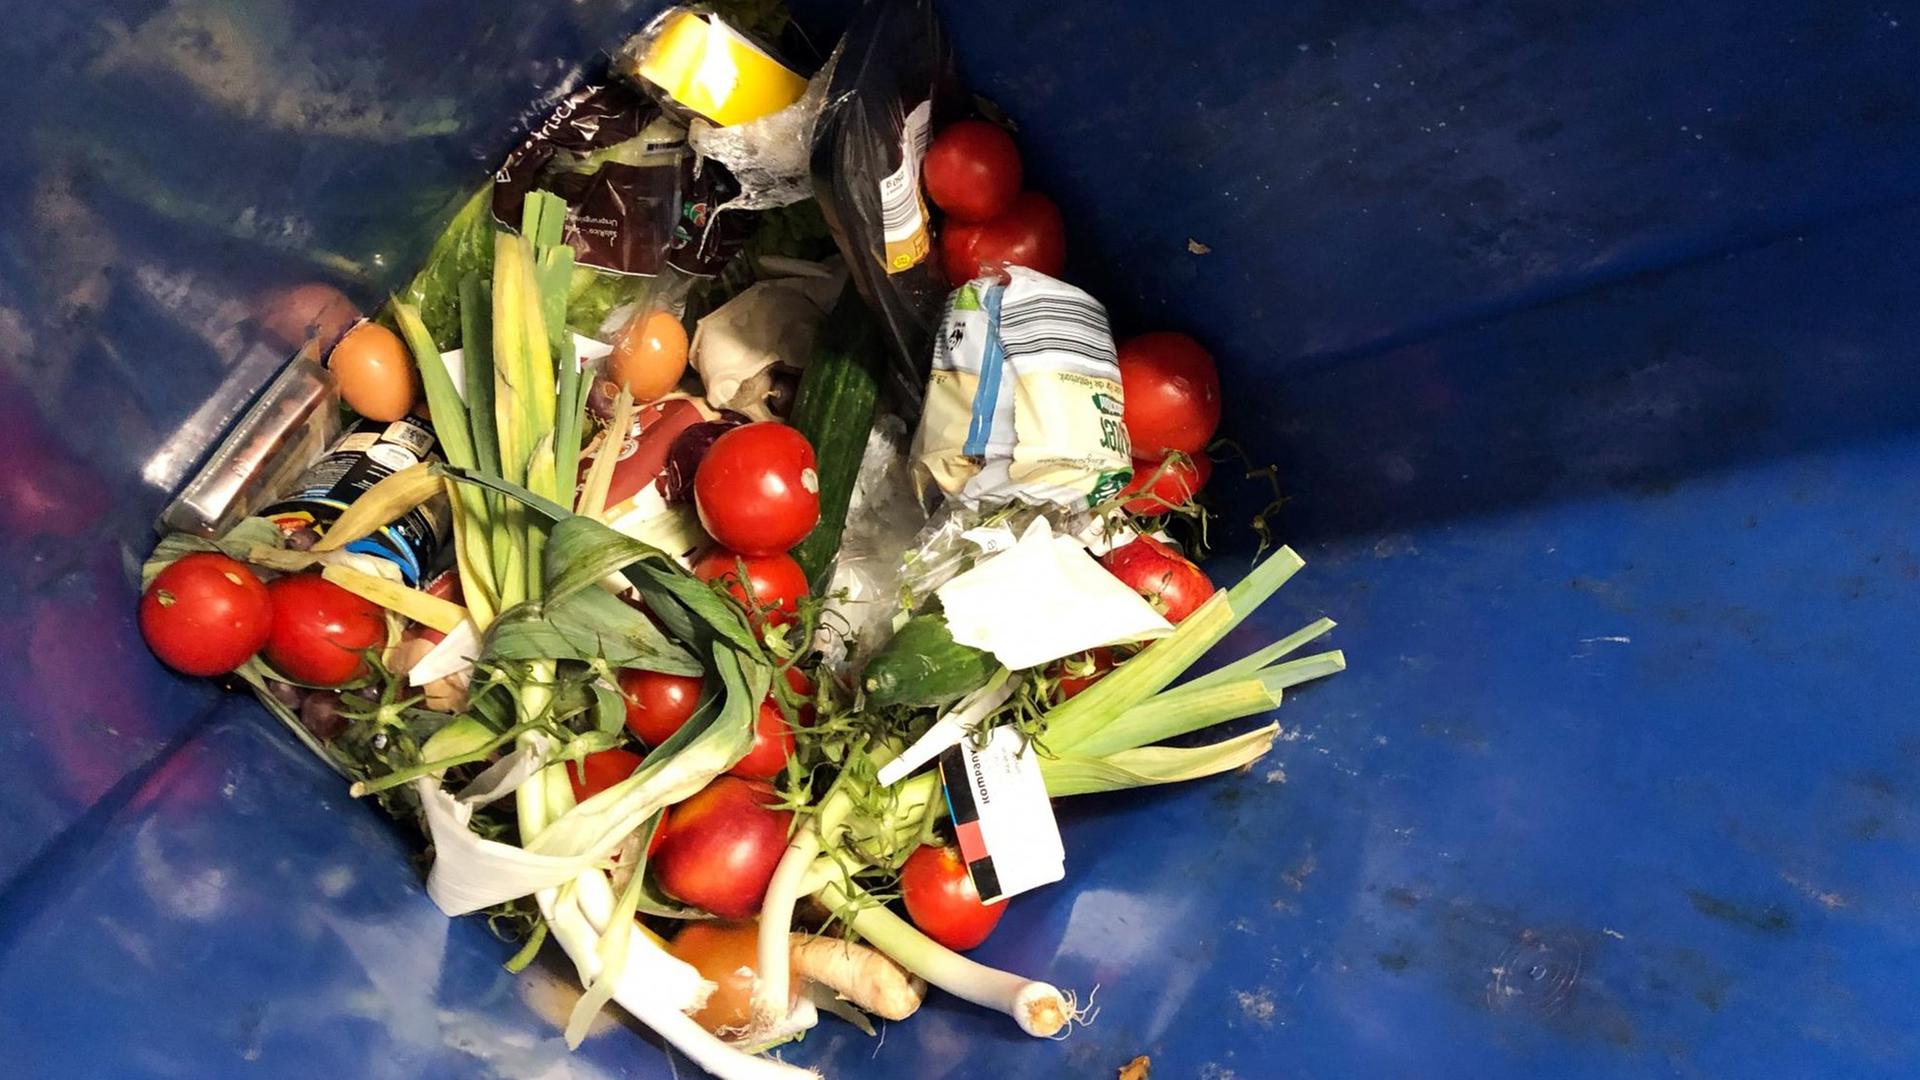 Weggeschmissene Lebensmittel liegen in einer Mülltonne.